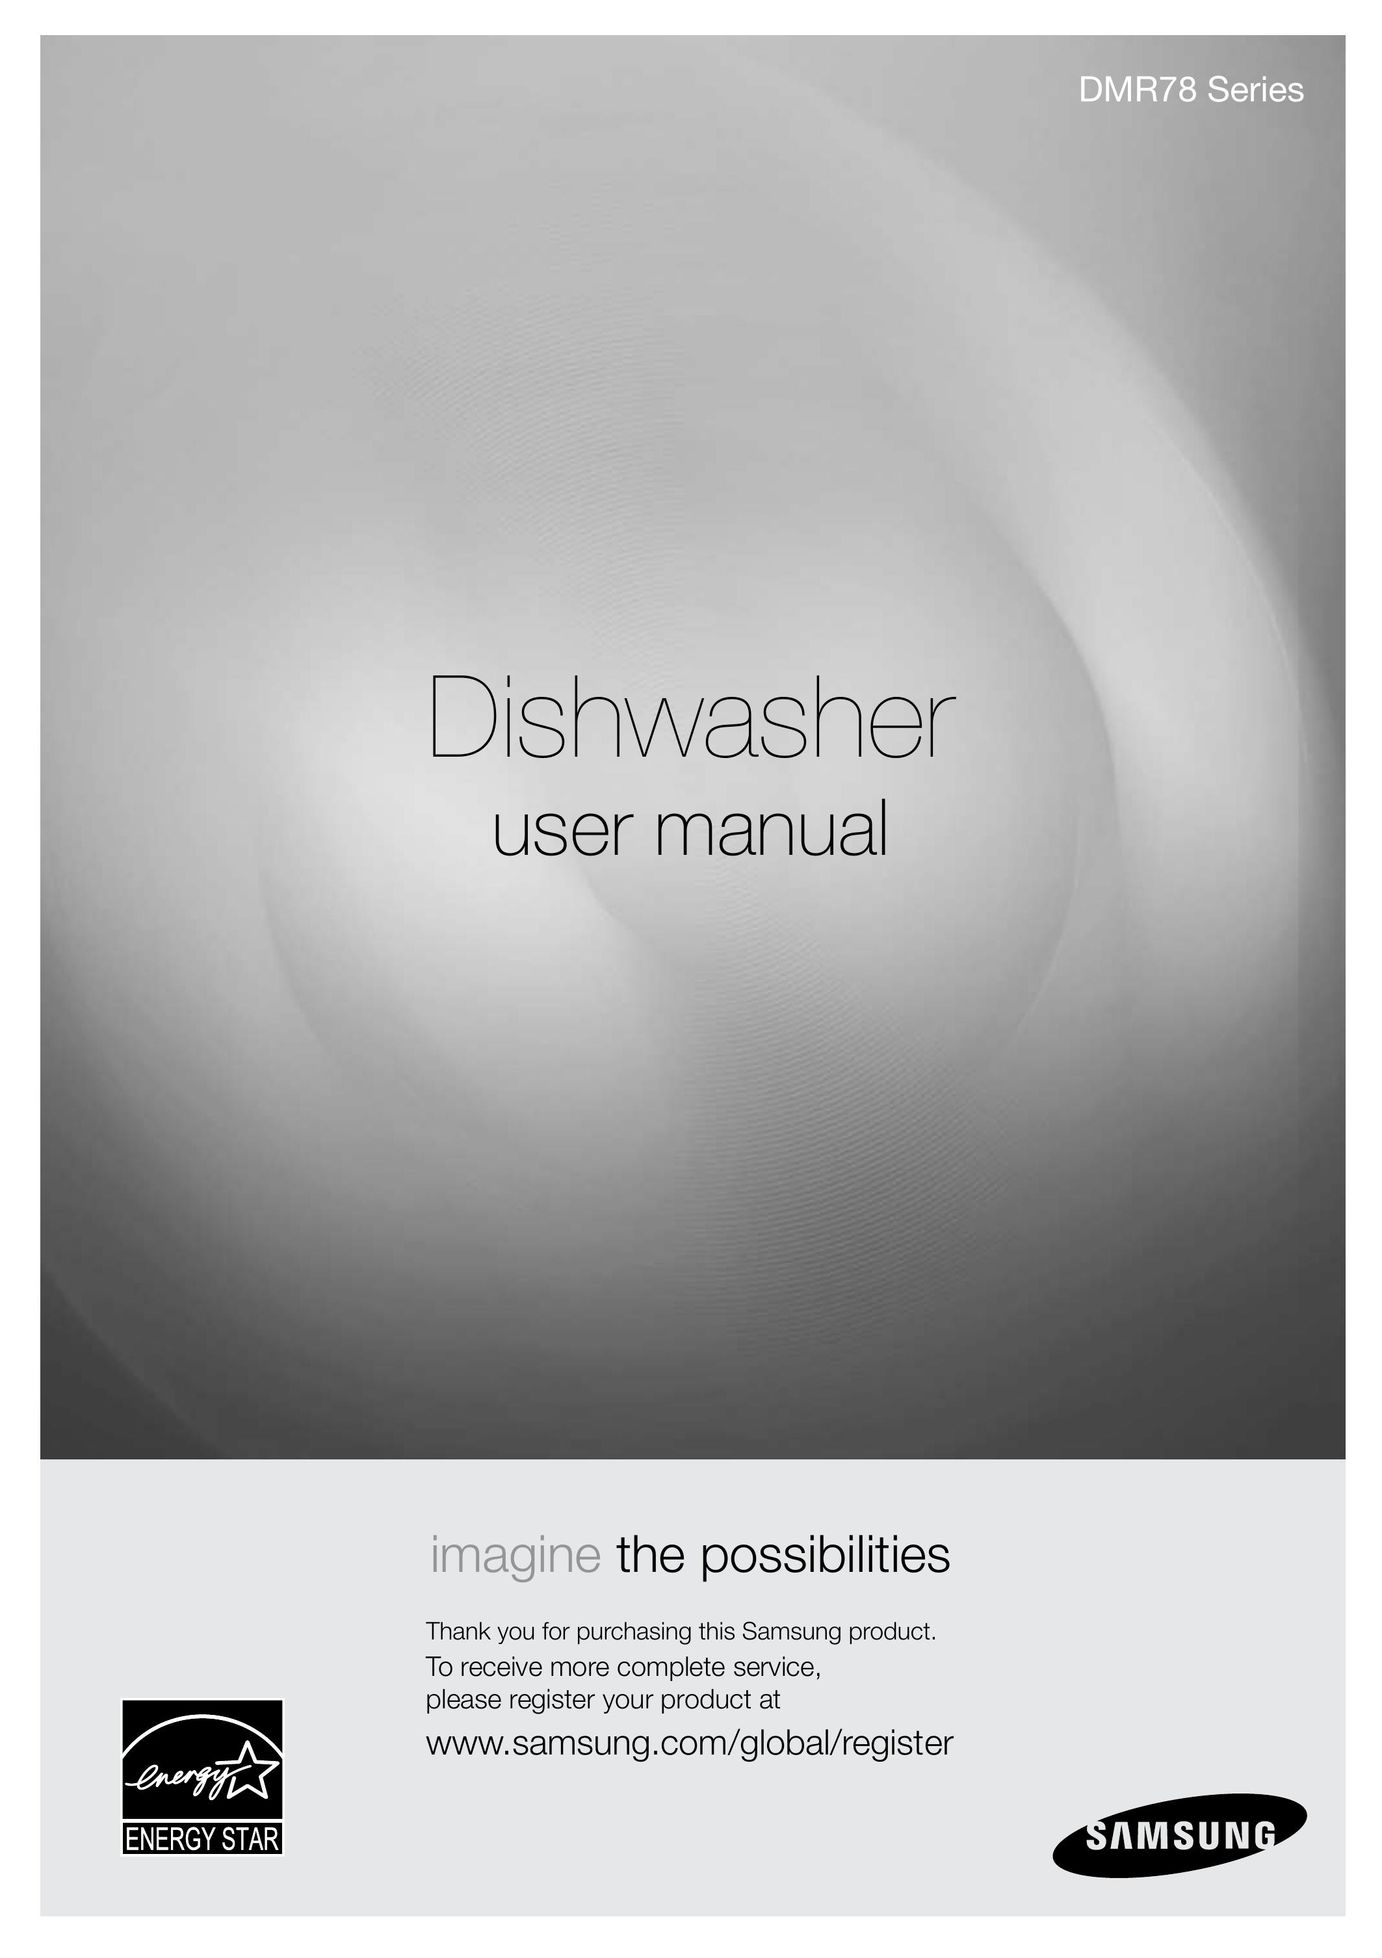 Samsung DMR78 Dishwasher User Manual